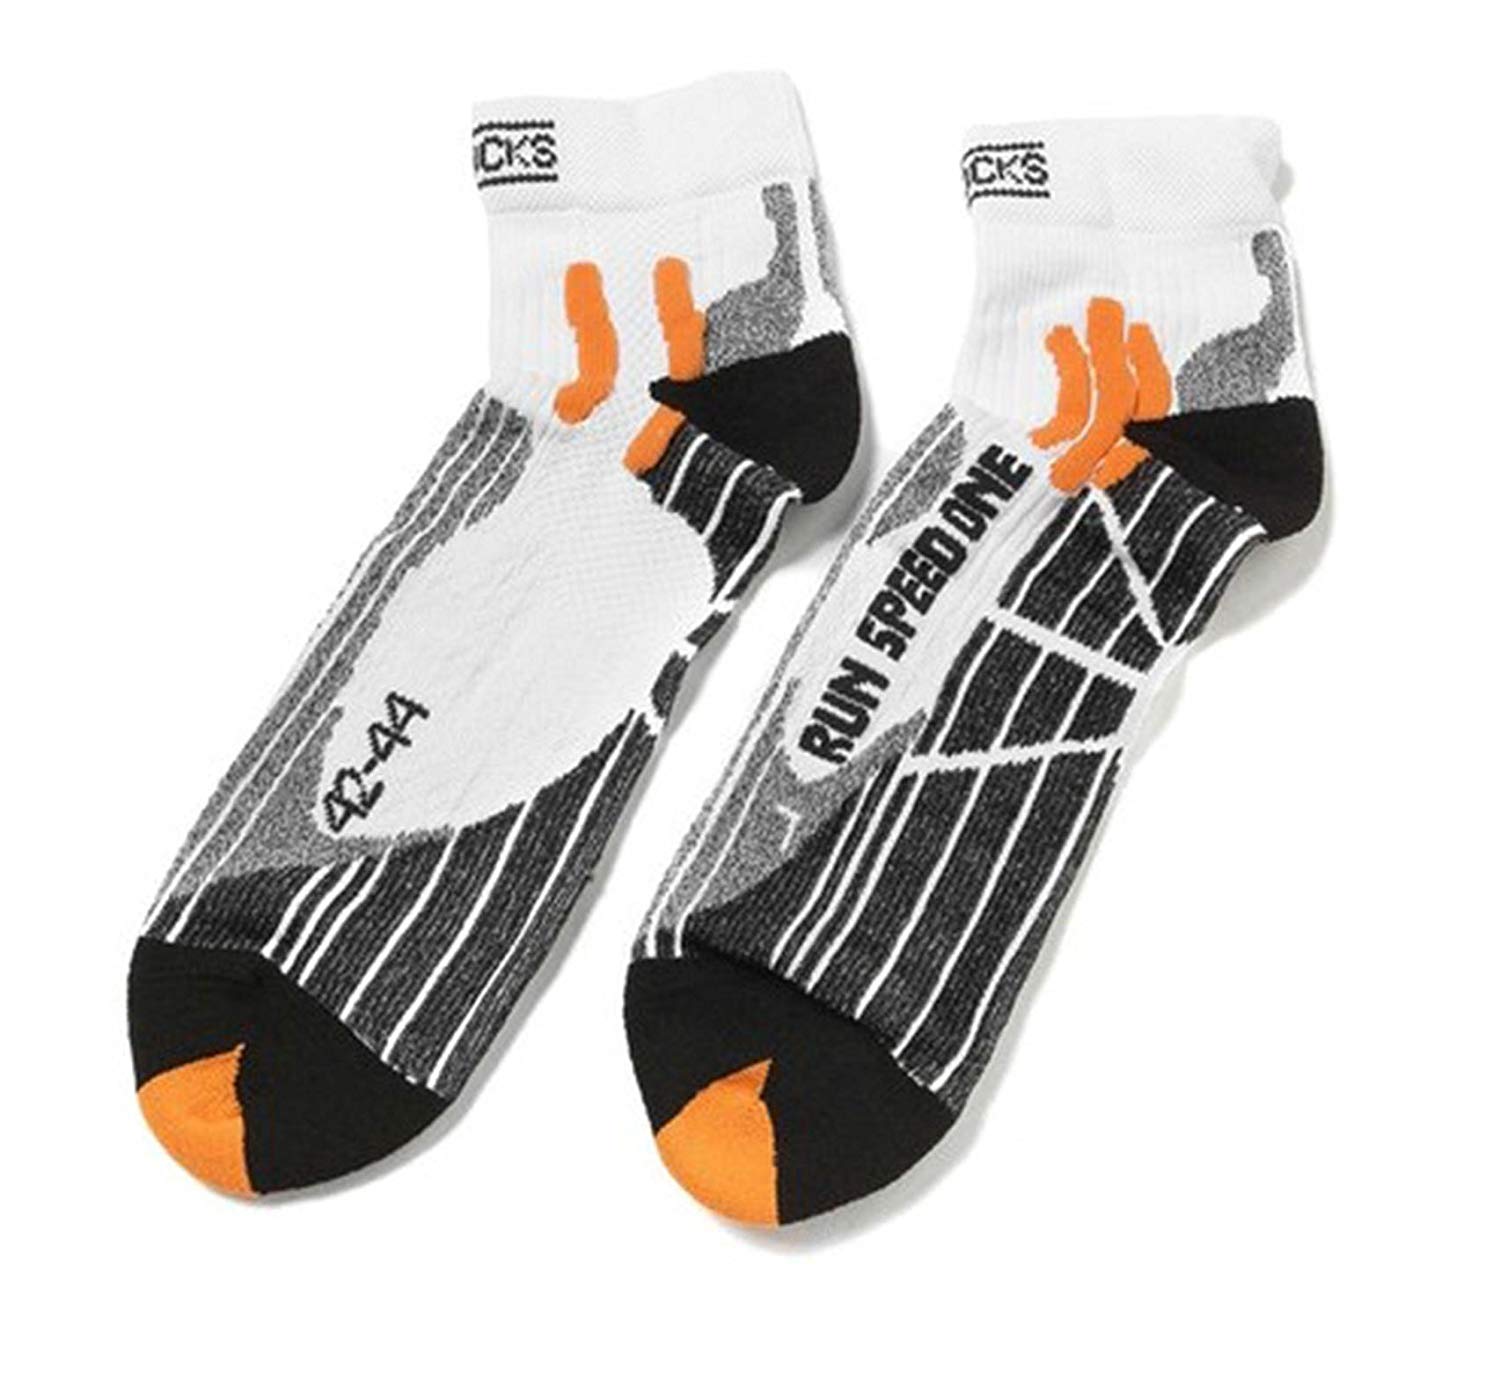 X-SOCKS Run Speed One Socks X Socks ktmart 1